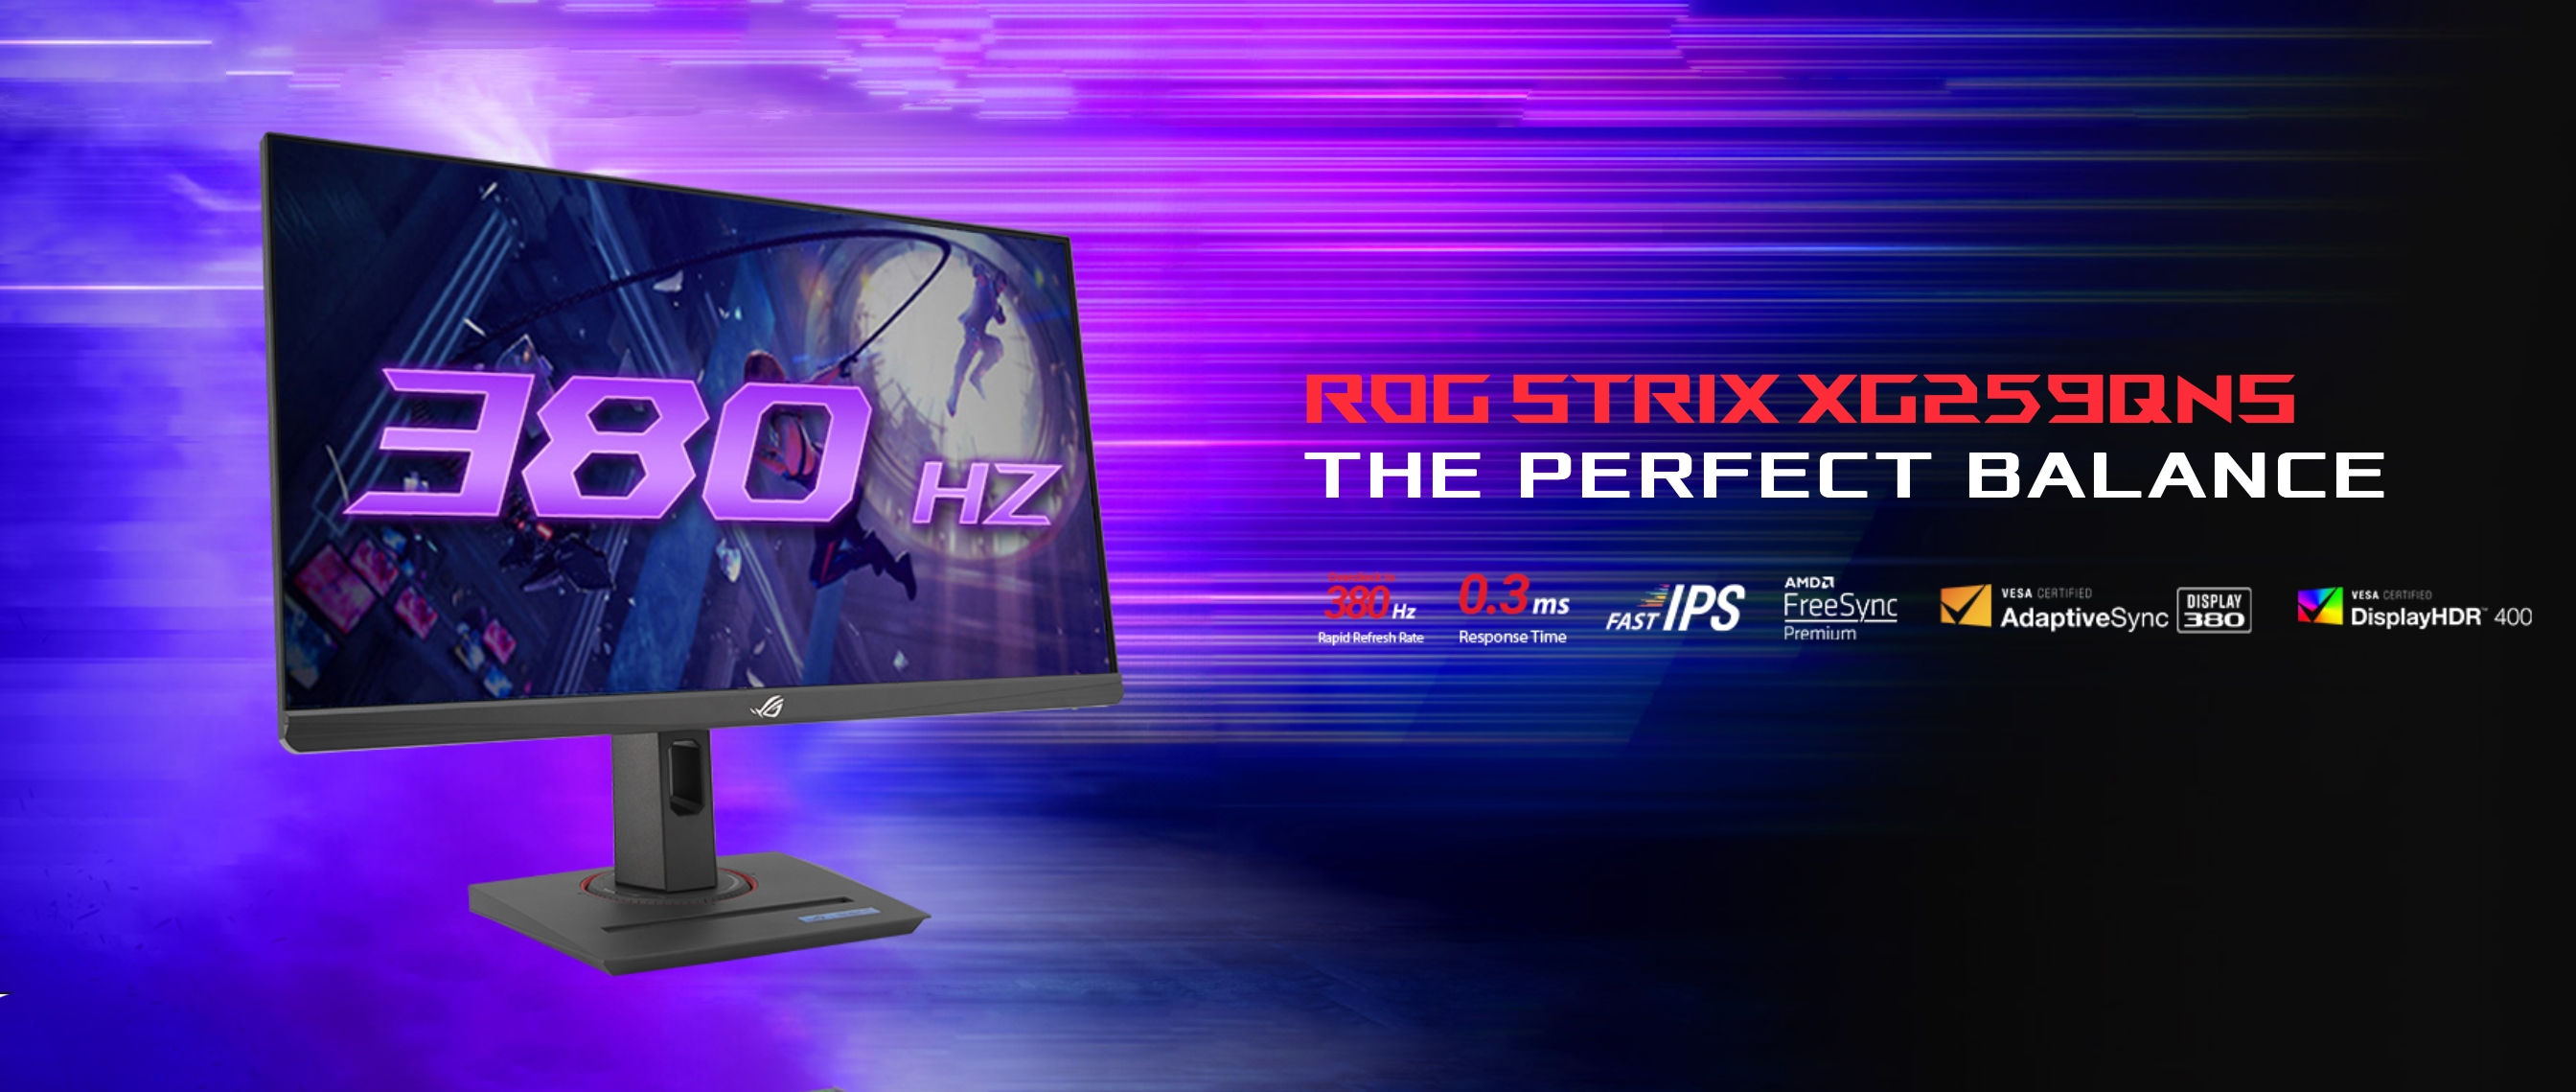 ASUS enthüllt den ROG Strix XG259QNS Gaming-Monitor mit 380Hz Bildwiederholfrequenz-Unterstützung